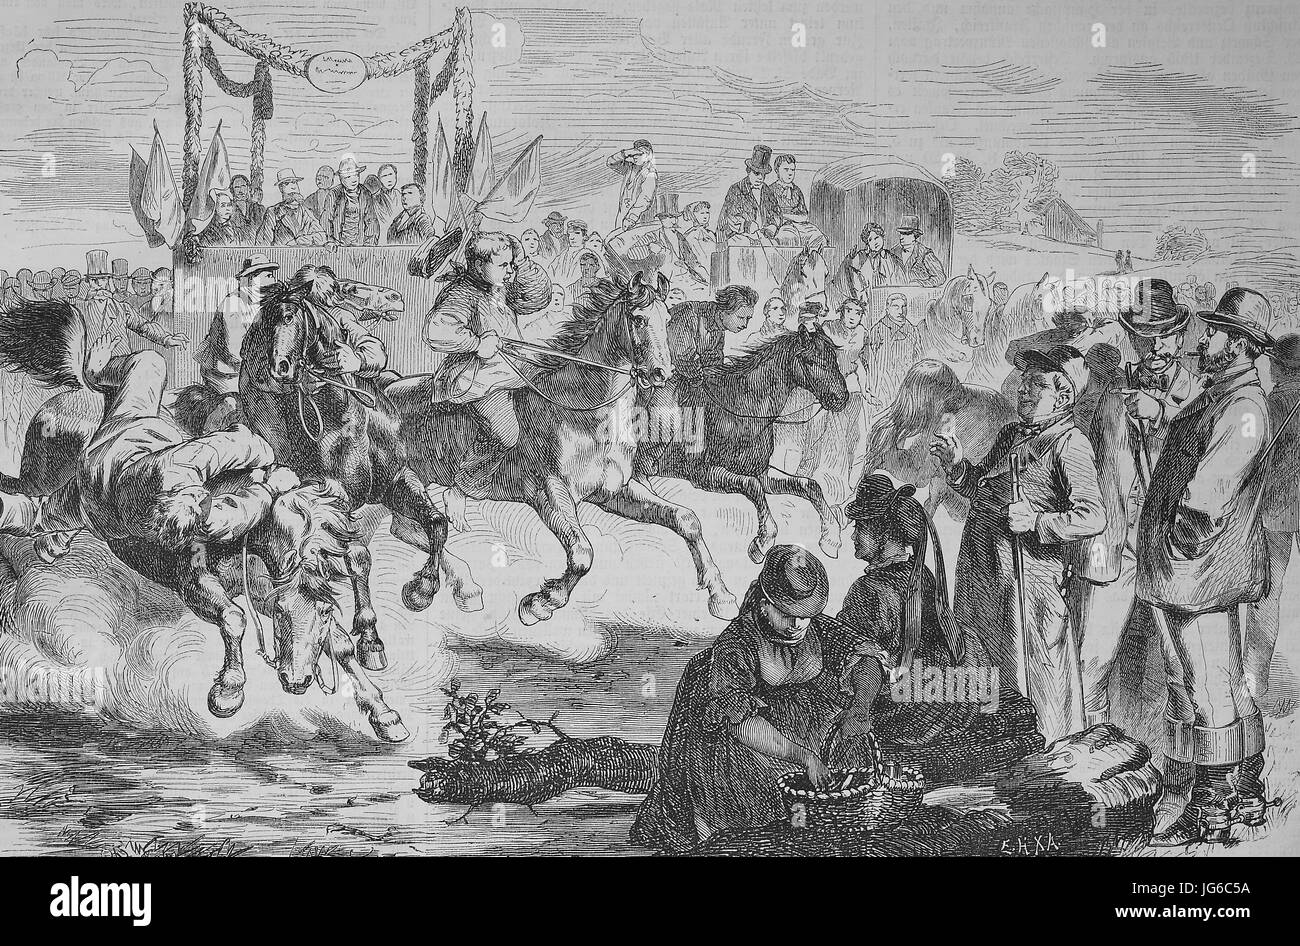 Digital verbessert:, ein landwirtschaftliches fest in Mecklenburg, Deutschland, Bauern organisieren Trab Rennen mit ihren Pferden, Abbildung aus dem 19. Jahrhundert Stockfoto